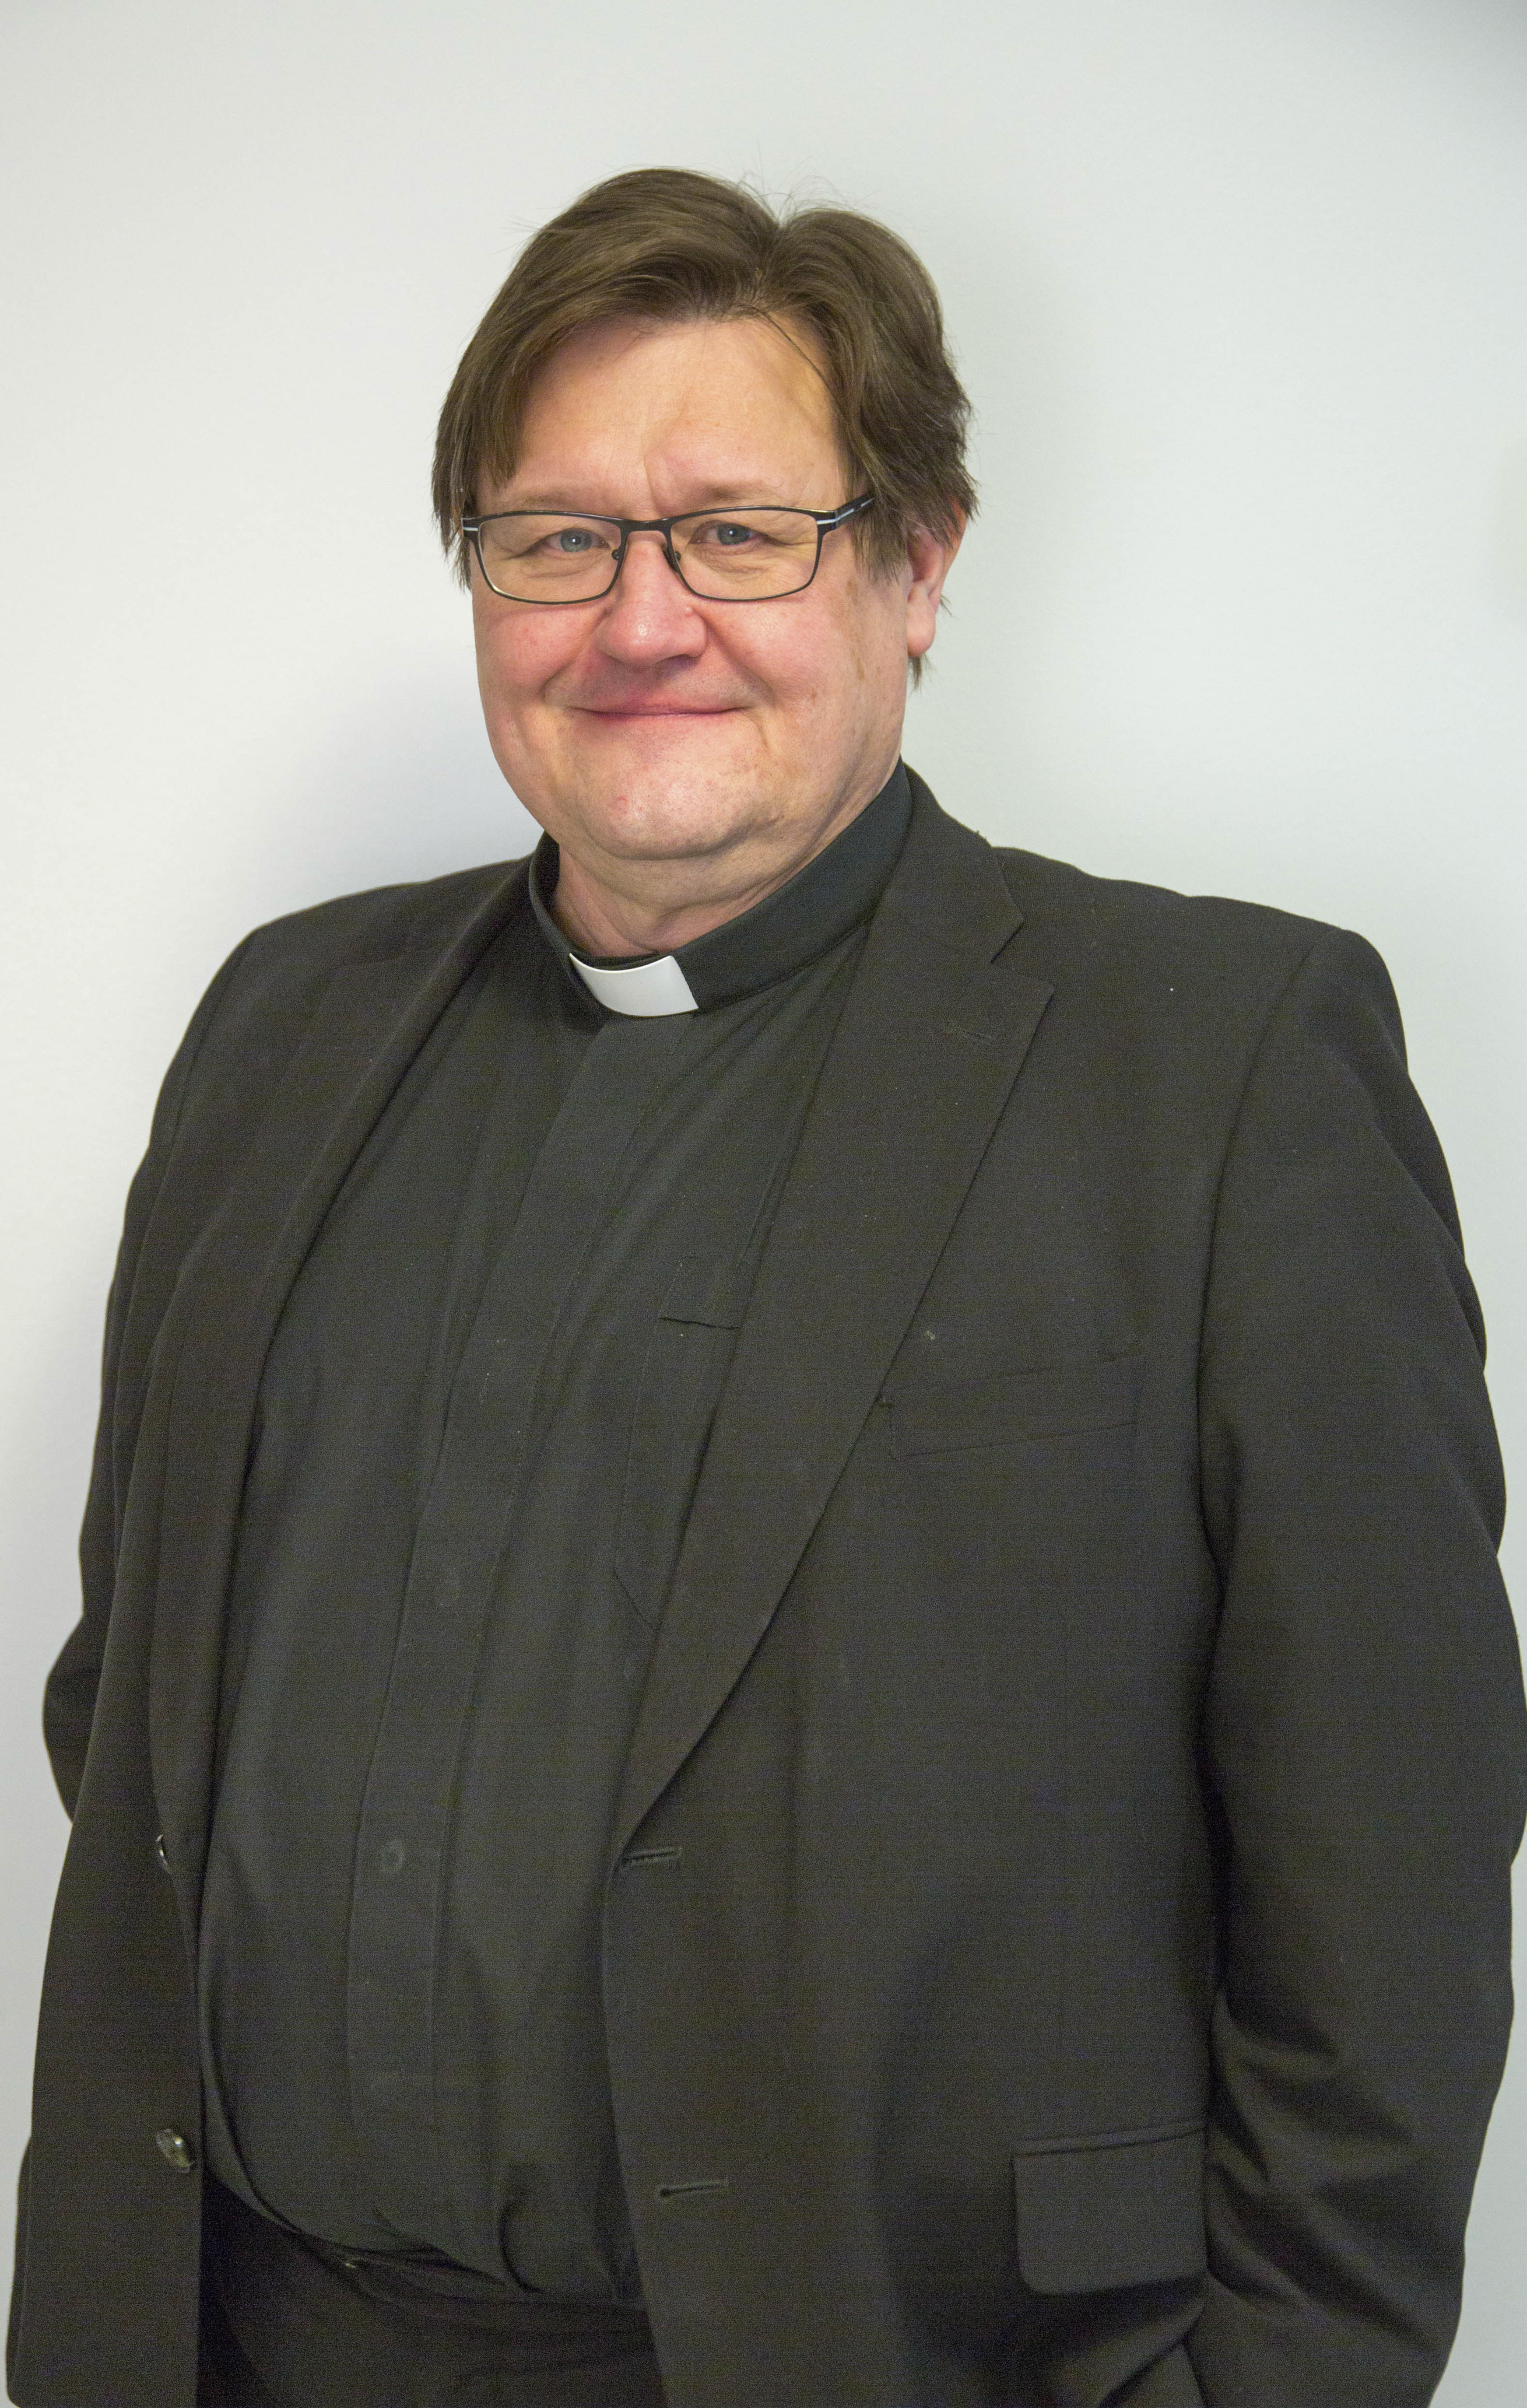 Nykyinen kirkkoherra Mikko Seppälä, joka siirtyy viettämään eläkepäiviä 1.5.2022. lähtien.